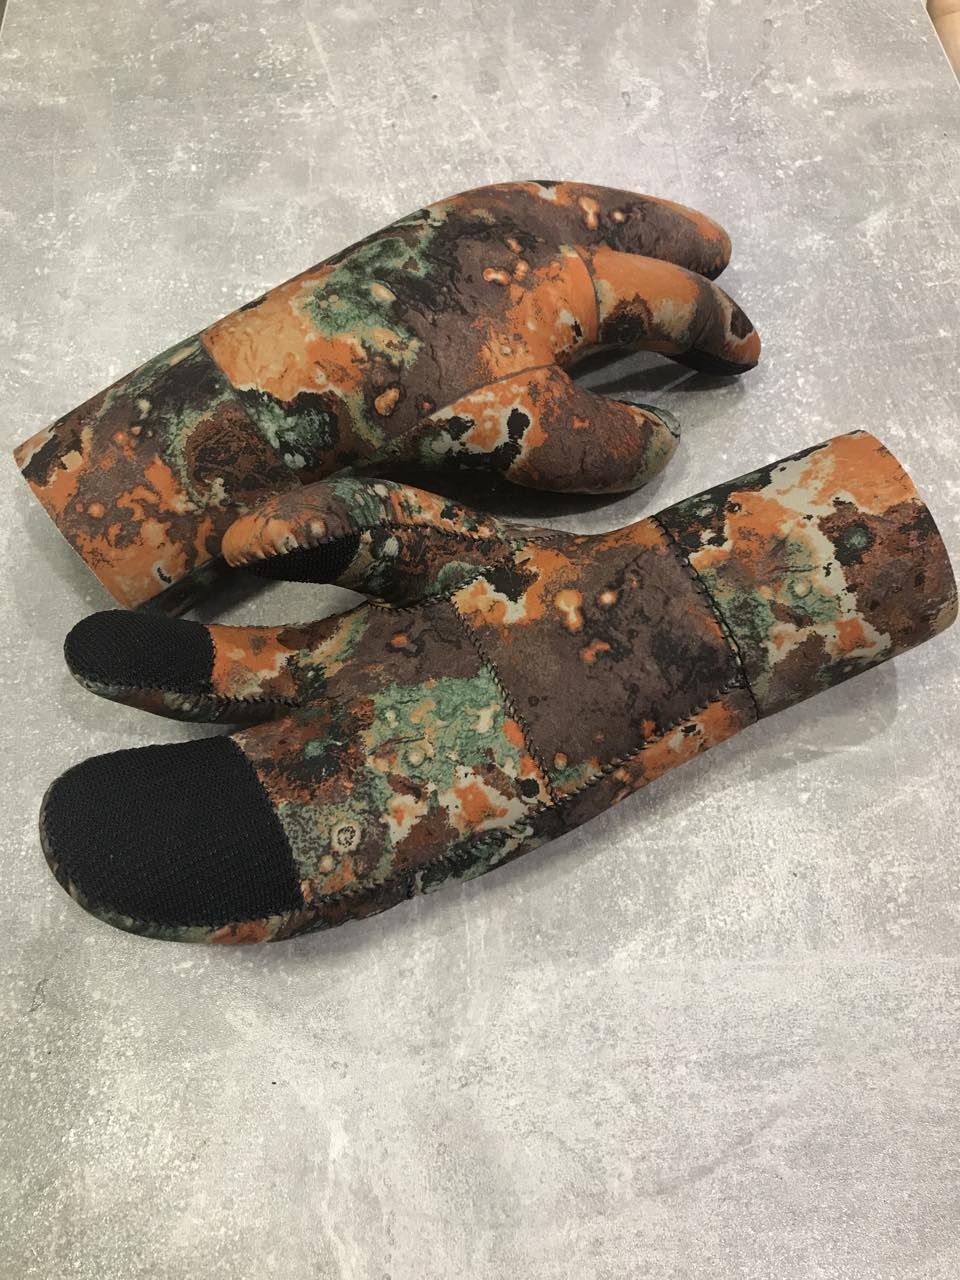 Носки и перчатки для подводной охоты